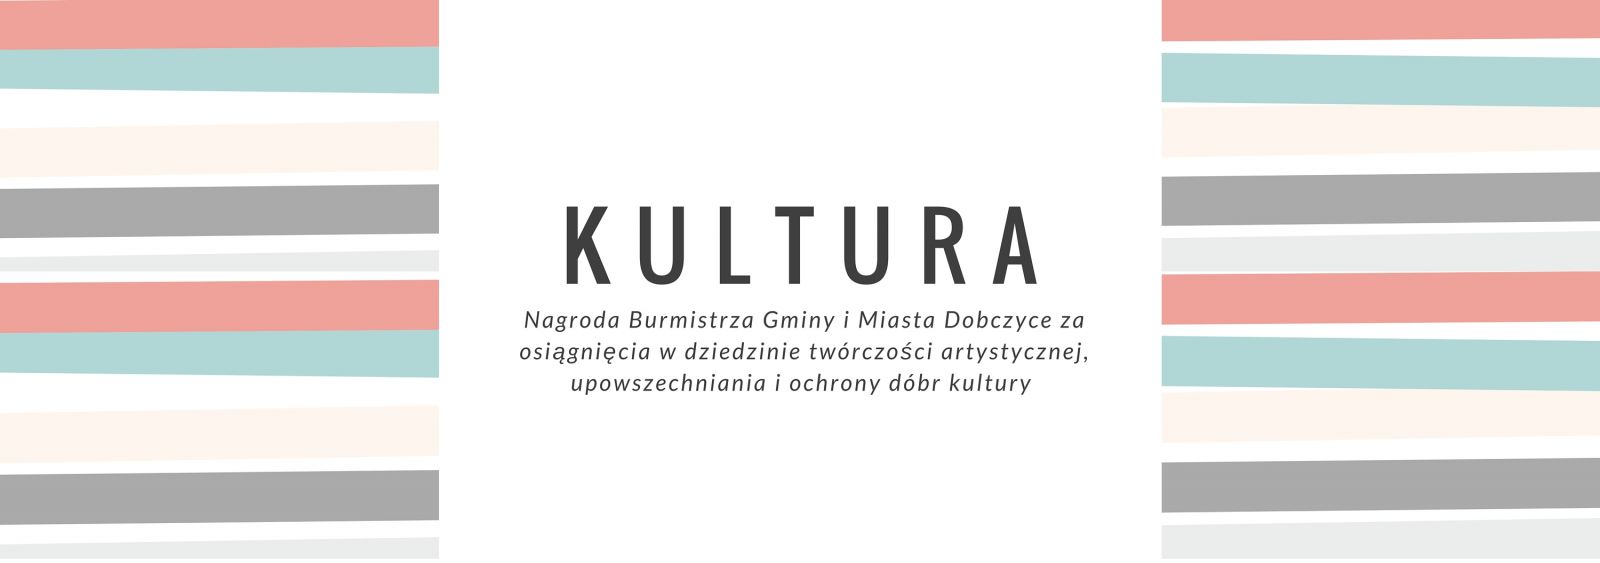 Nagroda Burmistrza Gminy i Miasta Dobczyce w dziedzinie kultury